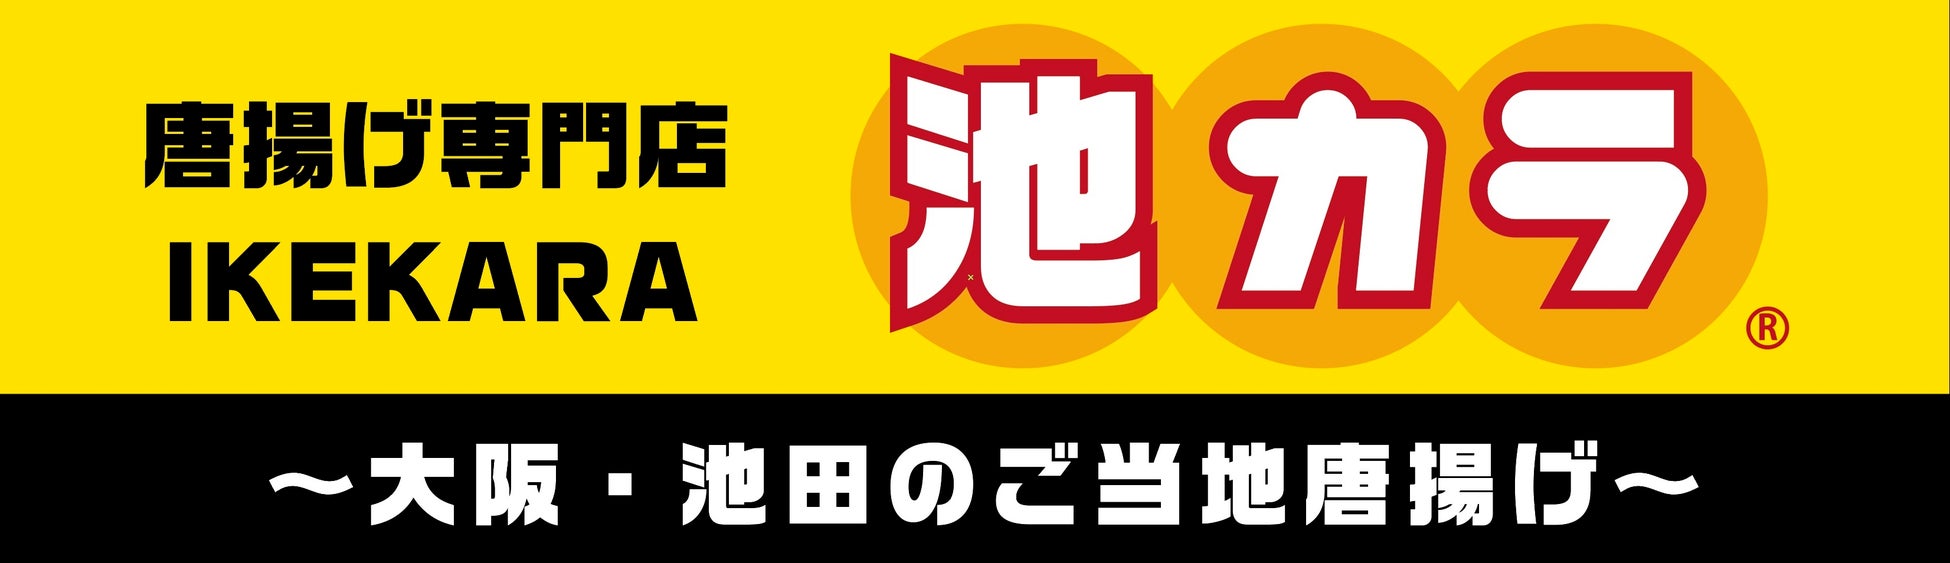 大阪のNEW名物　インスタントラーメンを衣にした唐揚げ「池カラ」のアンテナショップが10月31日に新宿横丁にオープン